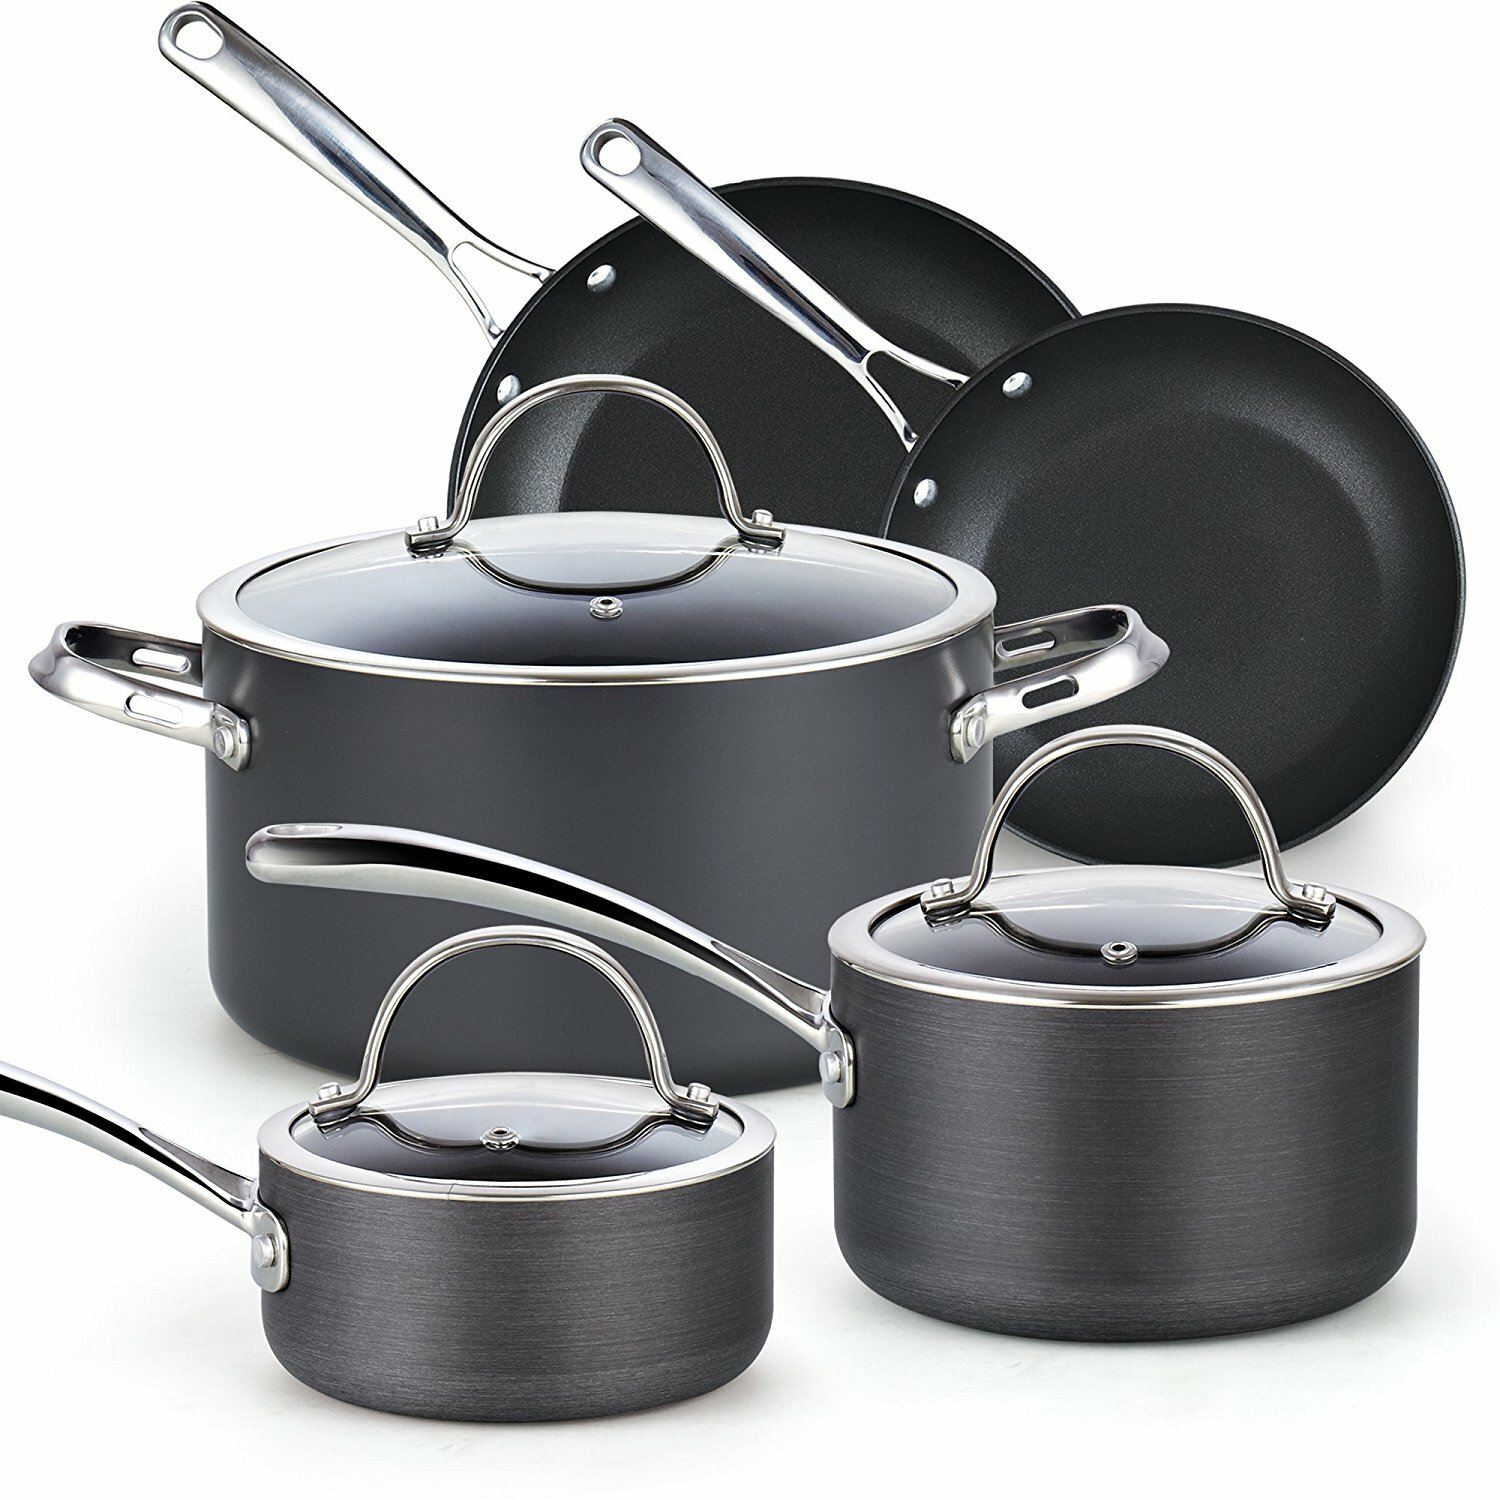 https://assets.wfcdn.com/im/38424080/compr-r85/3500/35000422/8-piece-non-stick-aluminum-cookware-set.jpg